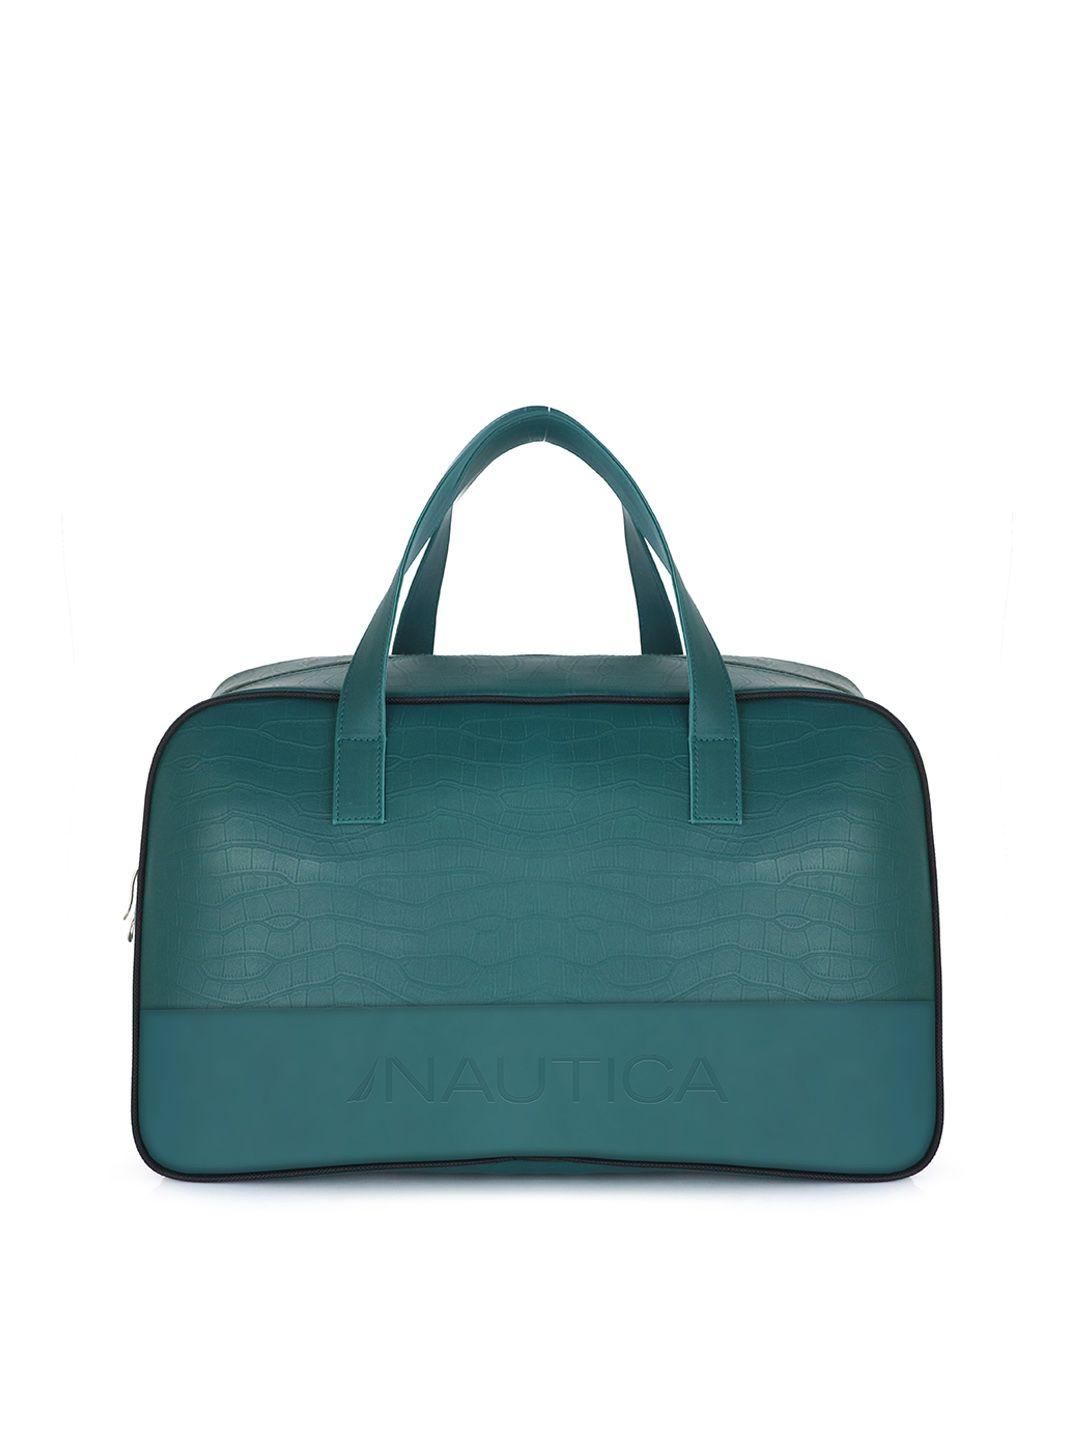 nautica medium leather duffel bag